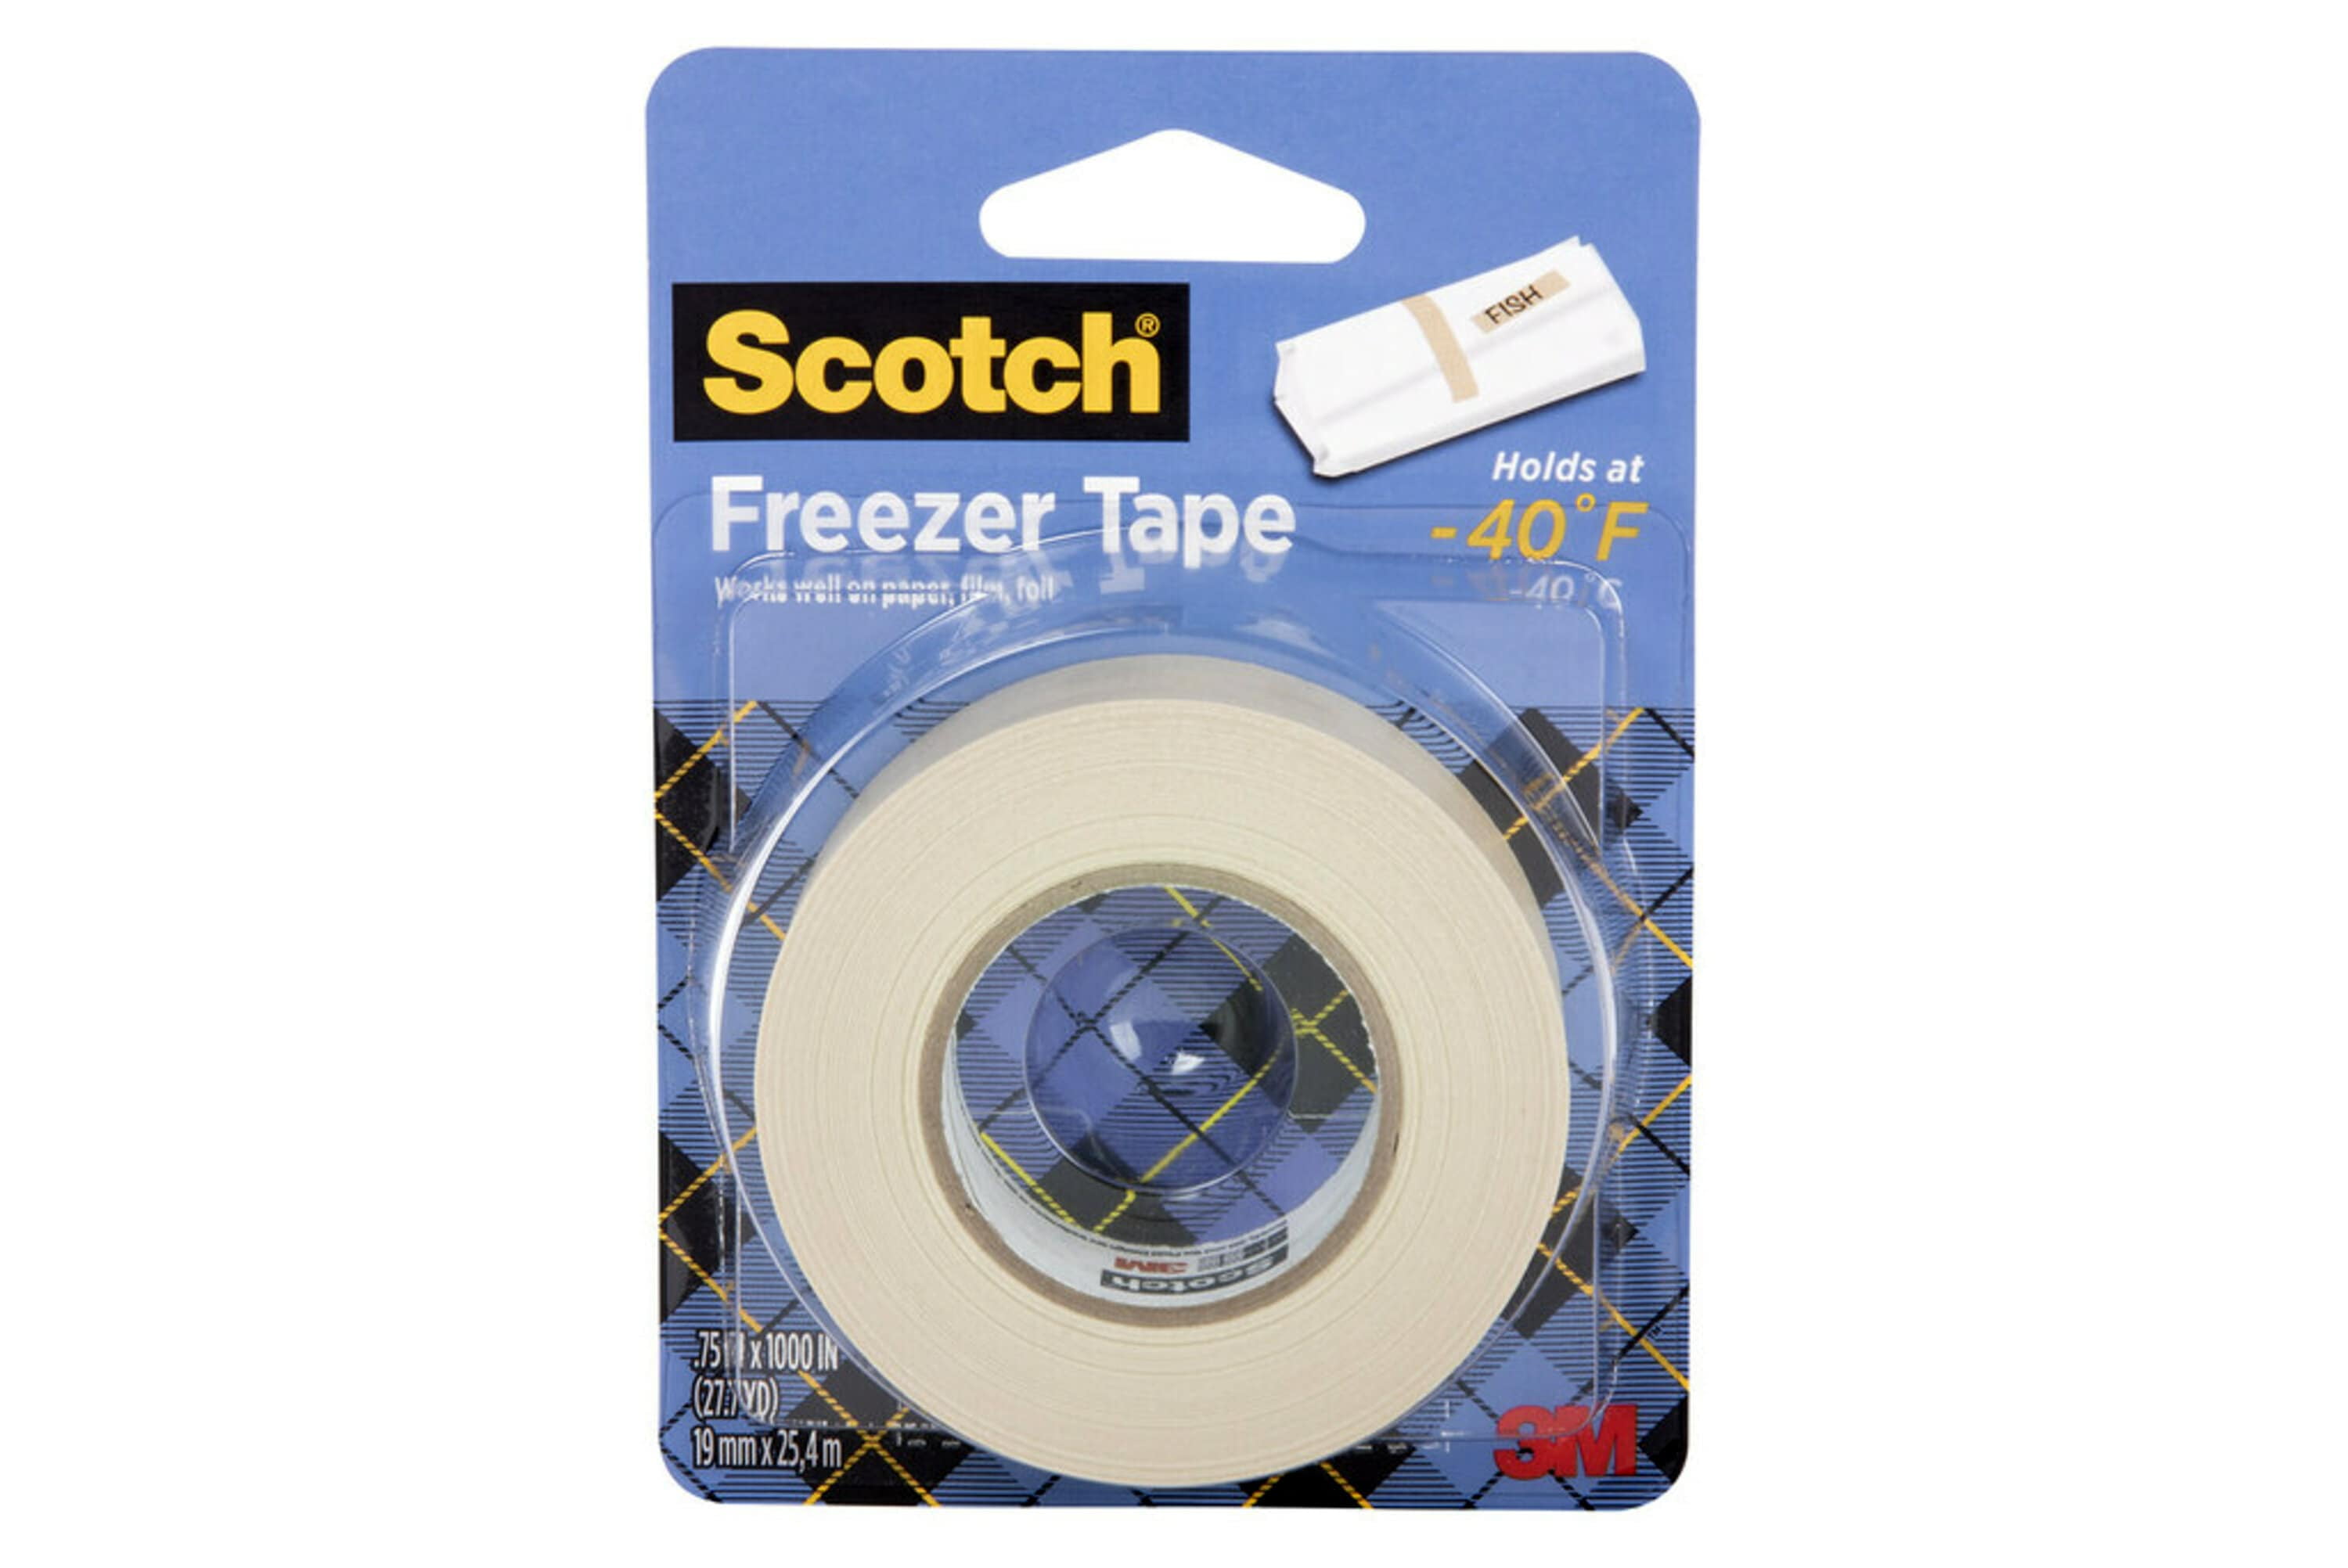 Scotch Freezer Tape 6-PACK 3/4 x 1000 Inch 